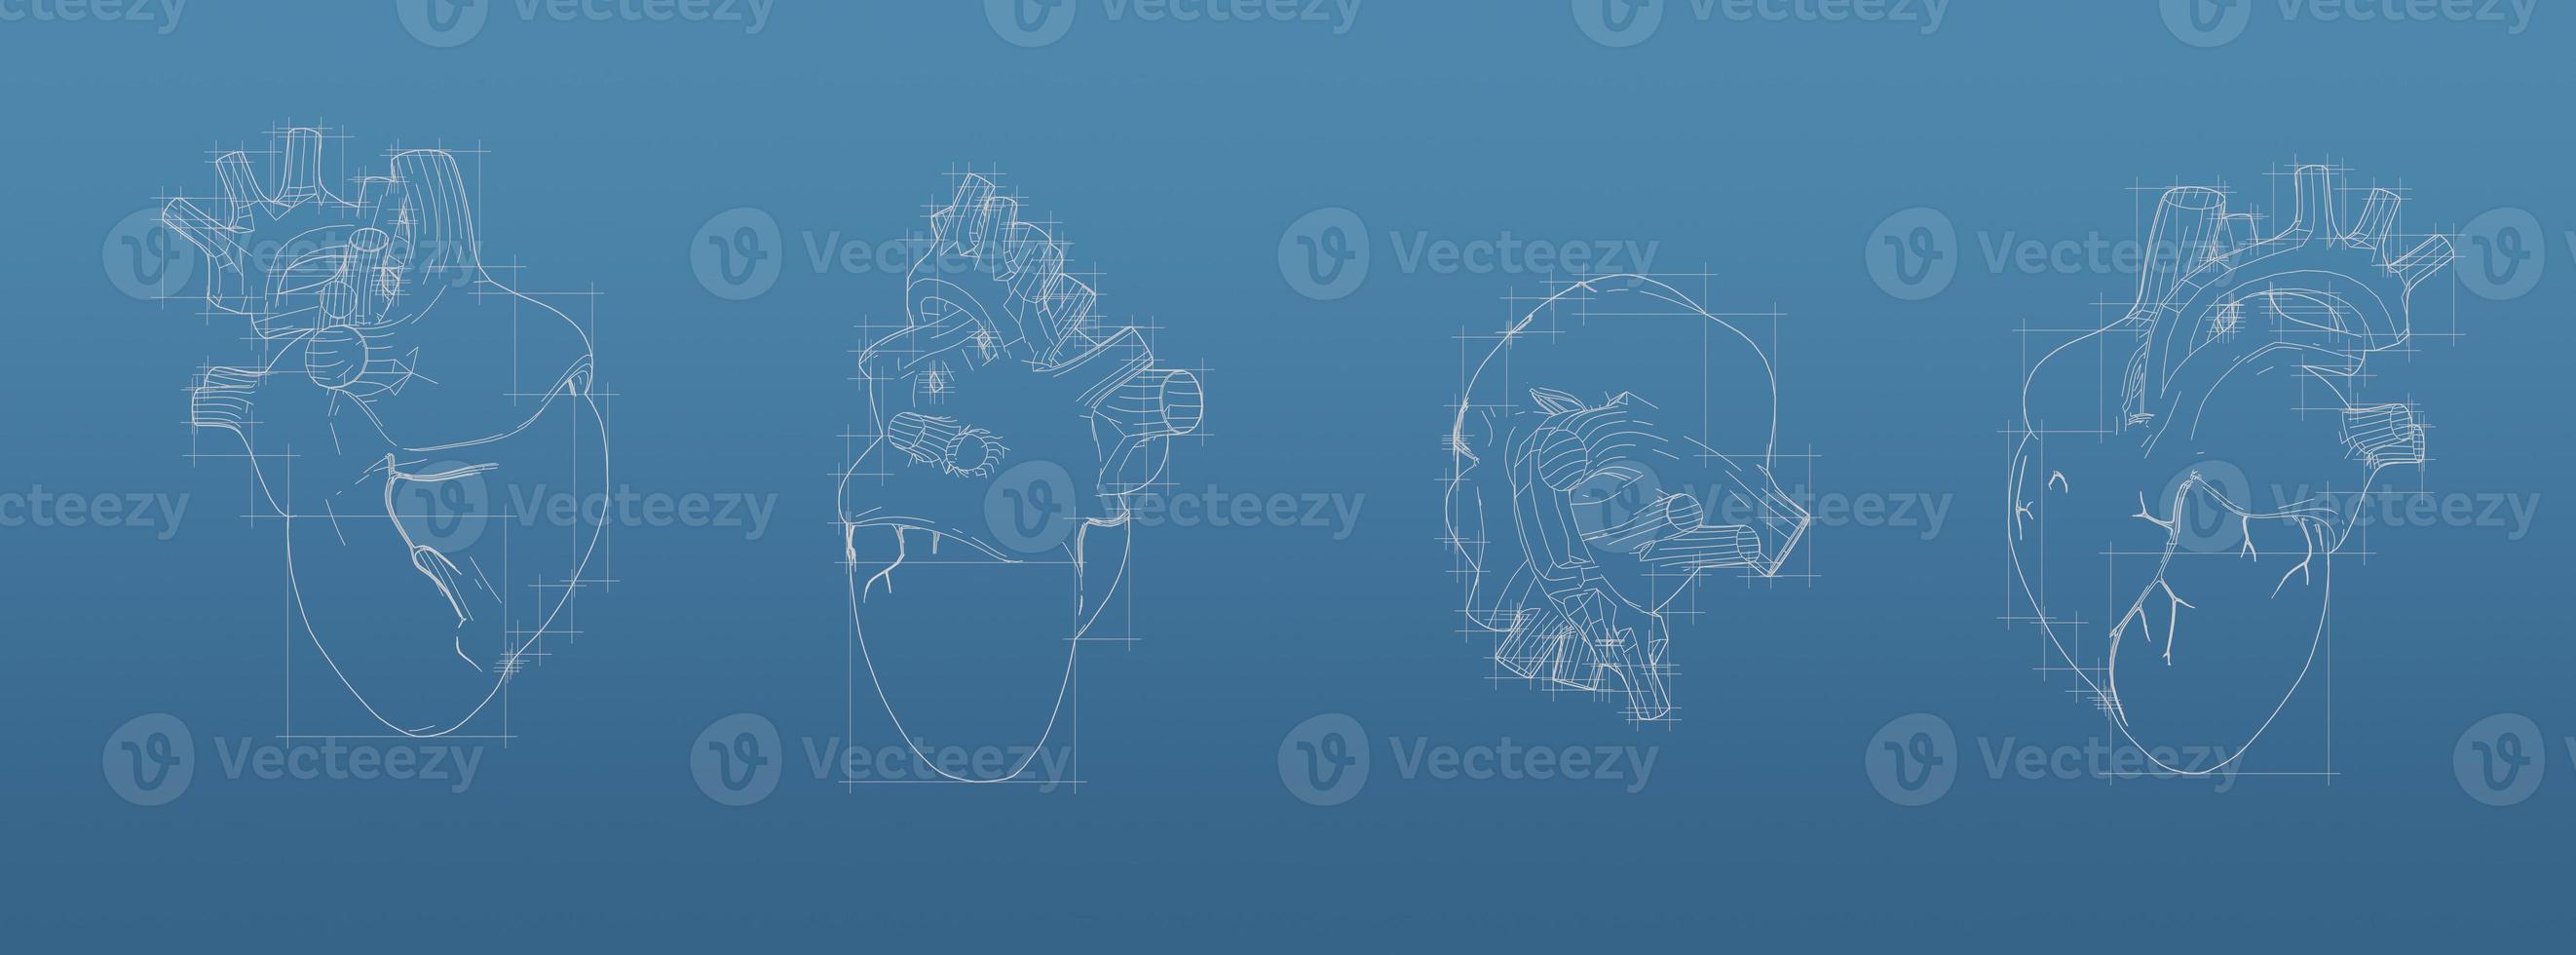 Herz 3D-Blueprint-Mesh-Modell auf blauem Hintergrund. Vorderansicht orthografisches und perspektivisches Freistil-Rendering, 3D-Rendering foto